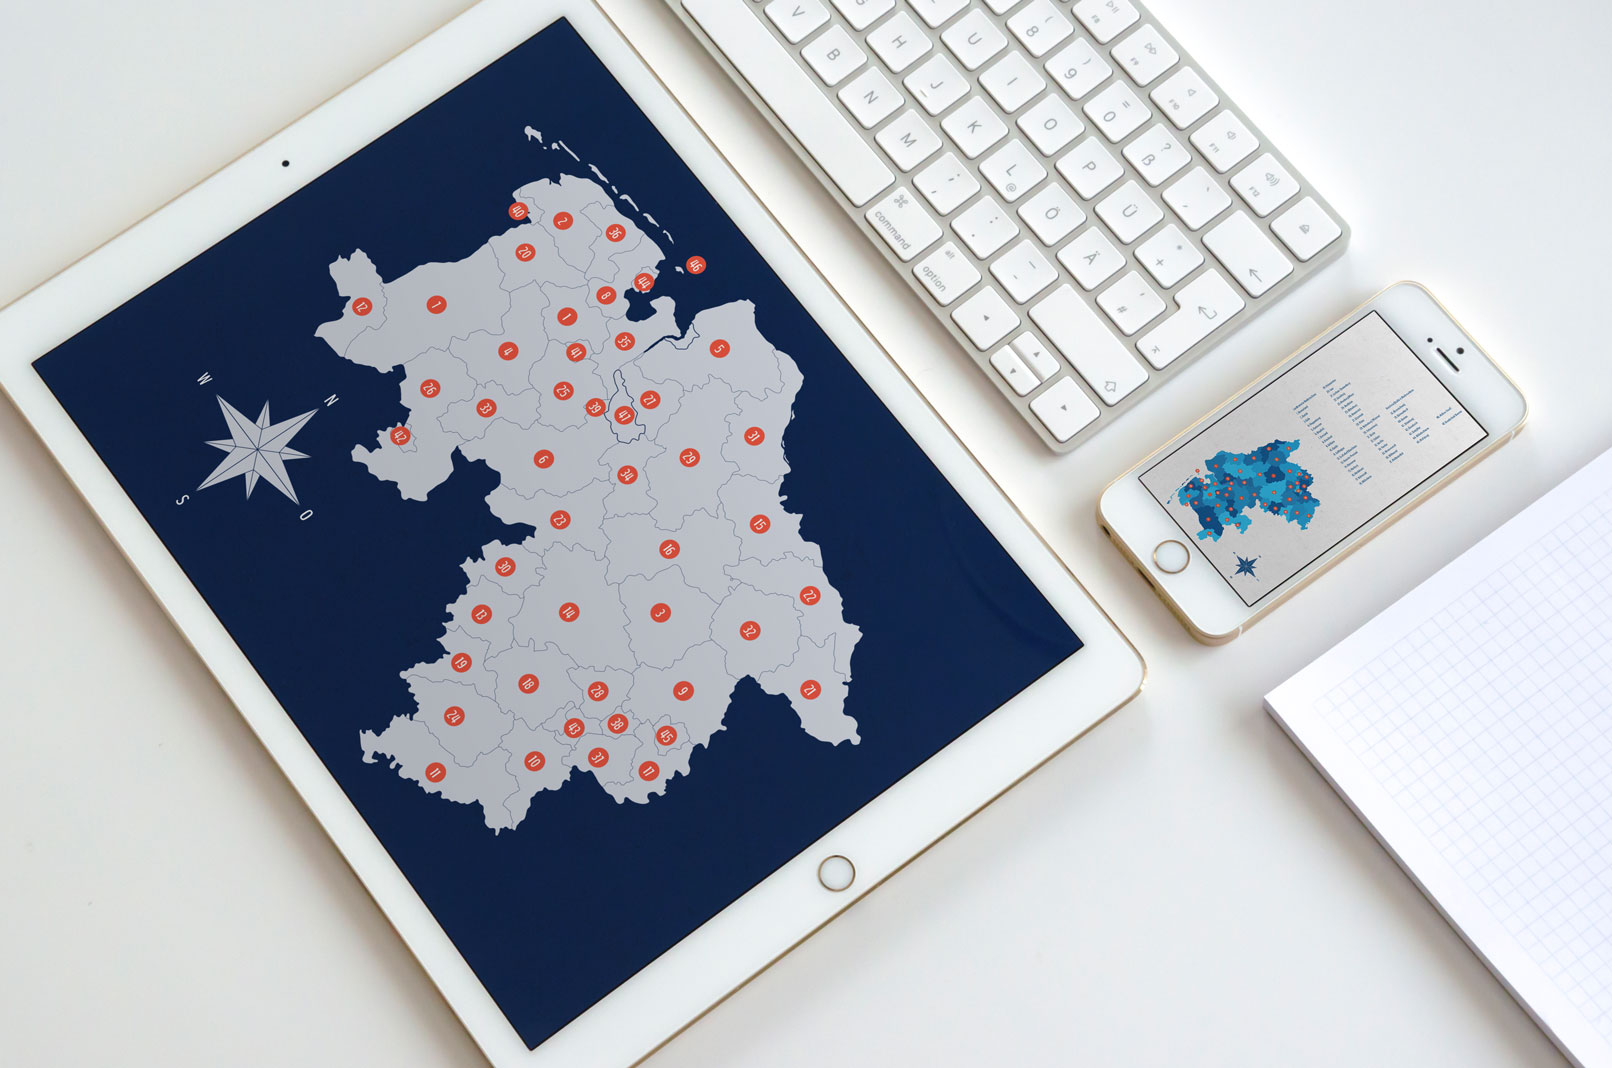 Landkarte von Niedersachsen und Bremen auf Tablet und Smartphone